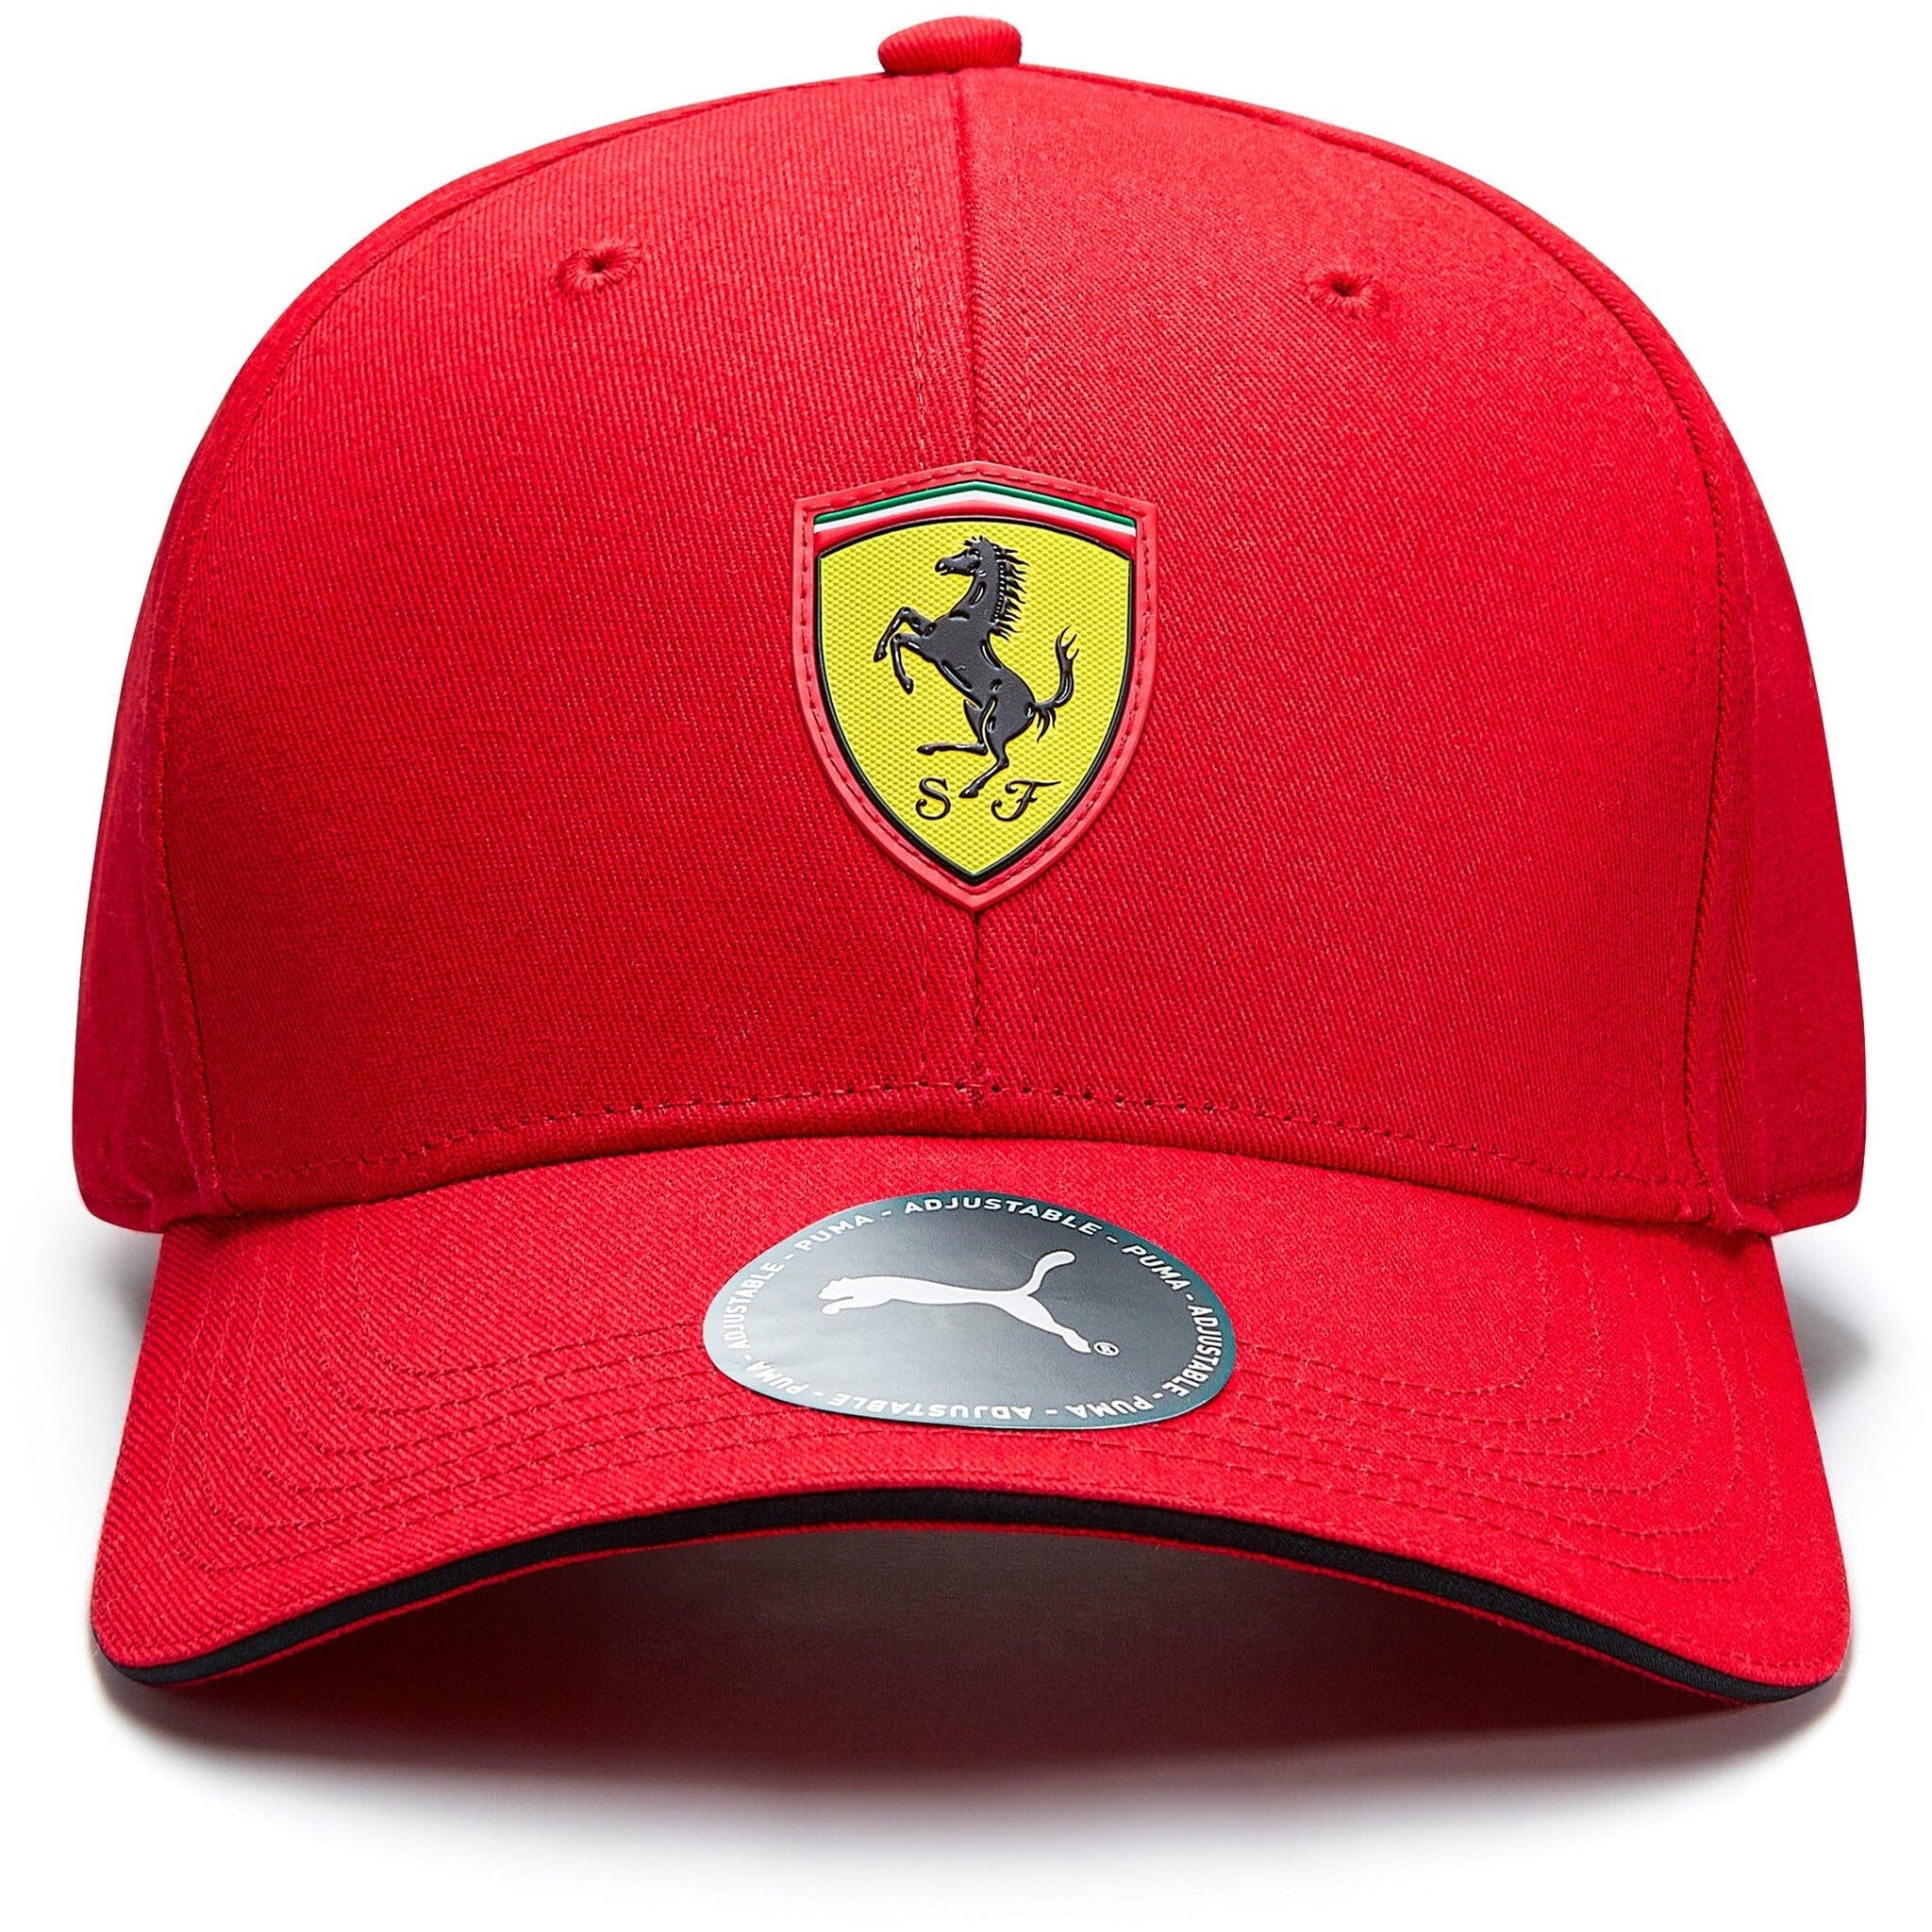 Scuderia Ferrari F1 Puma Kids Classic Hat - Youth Red/Black